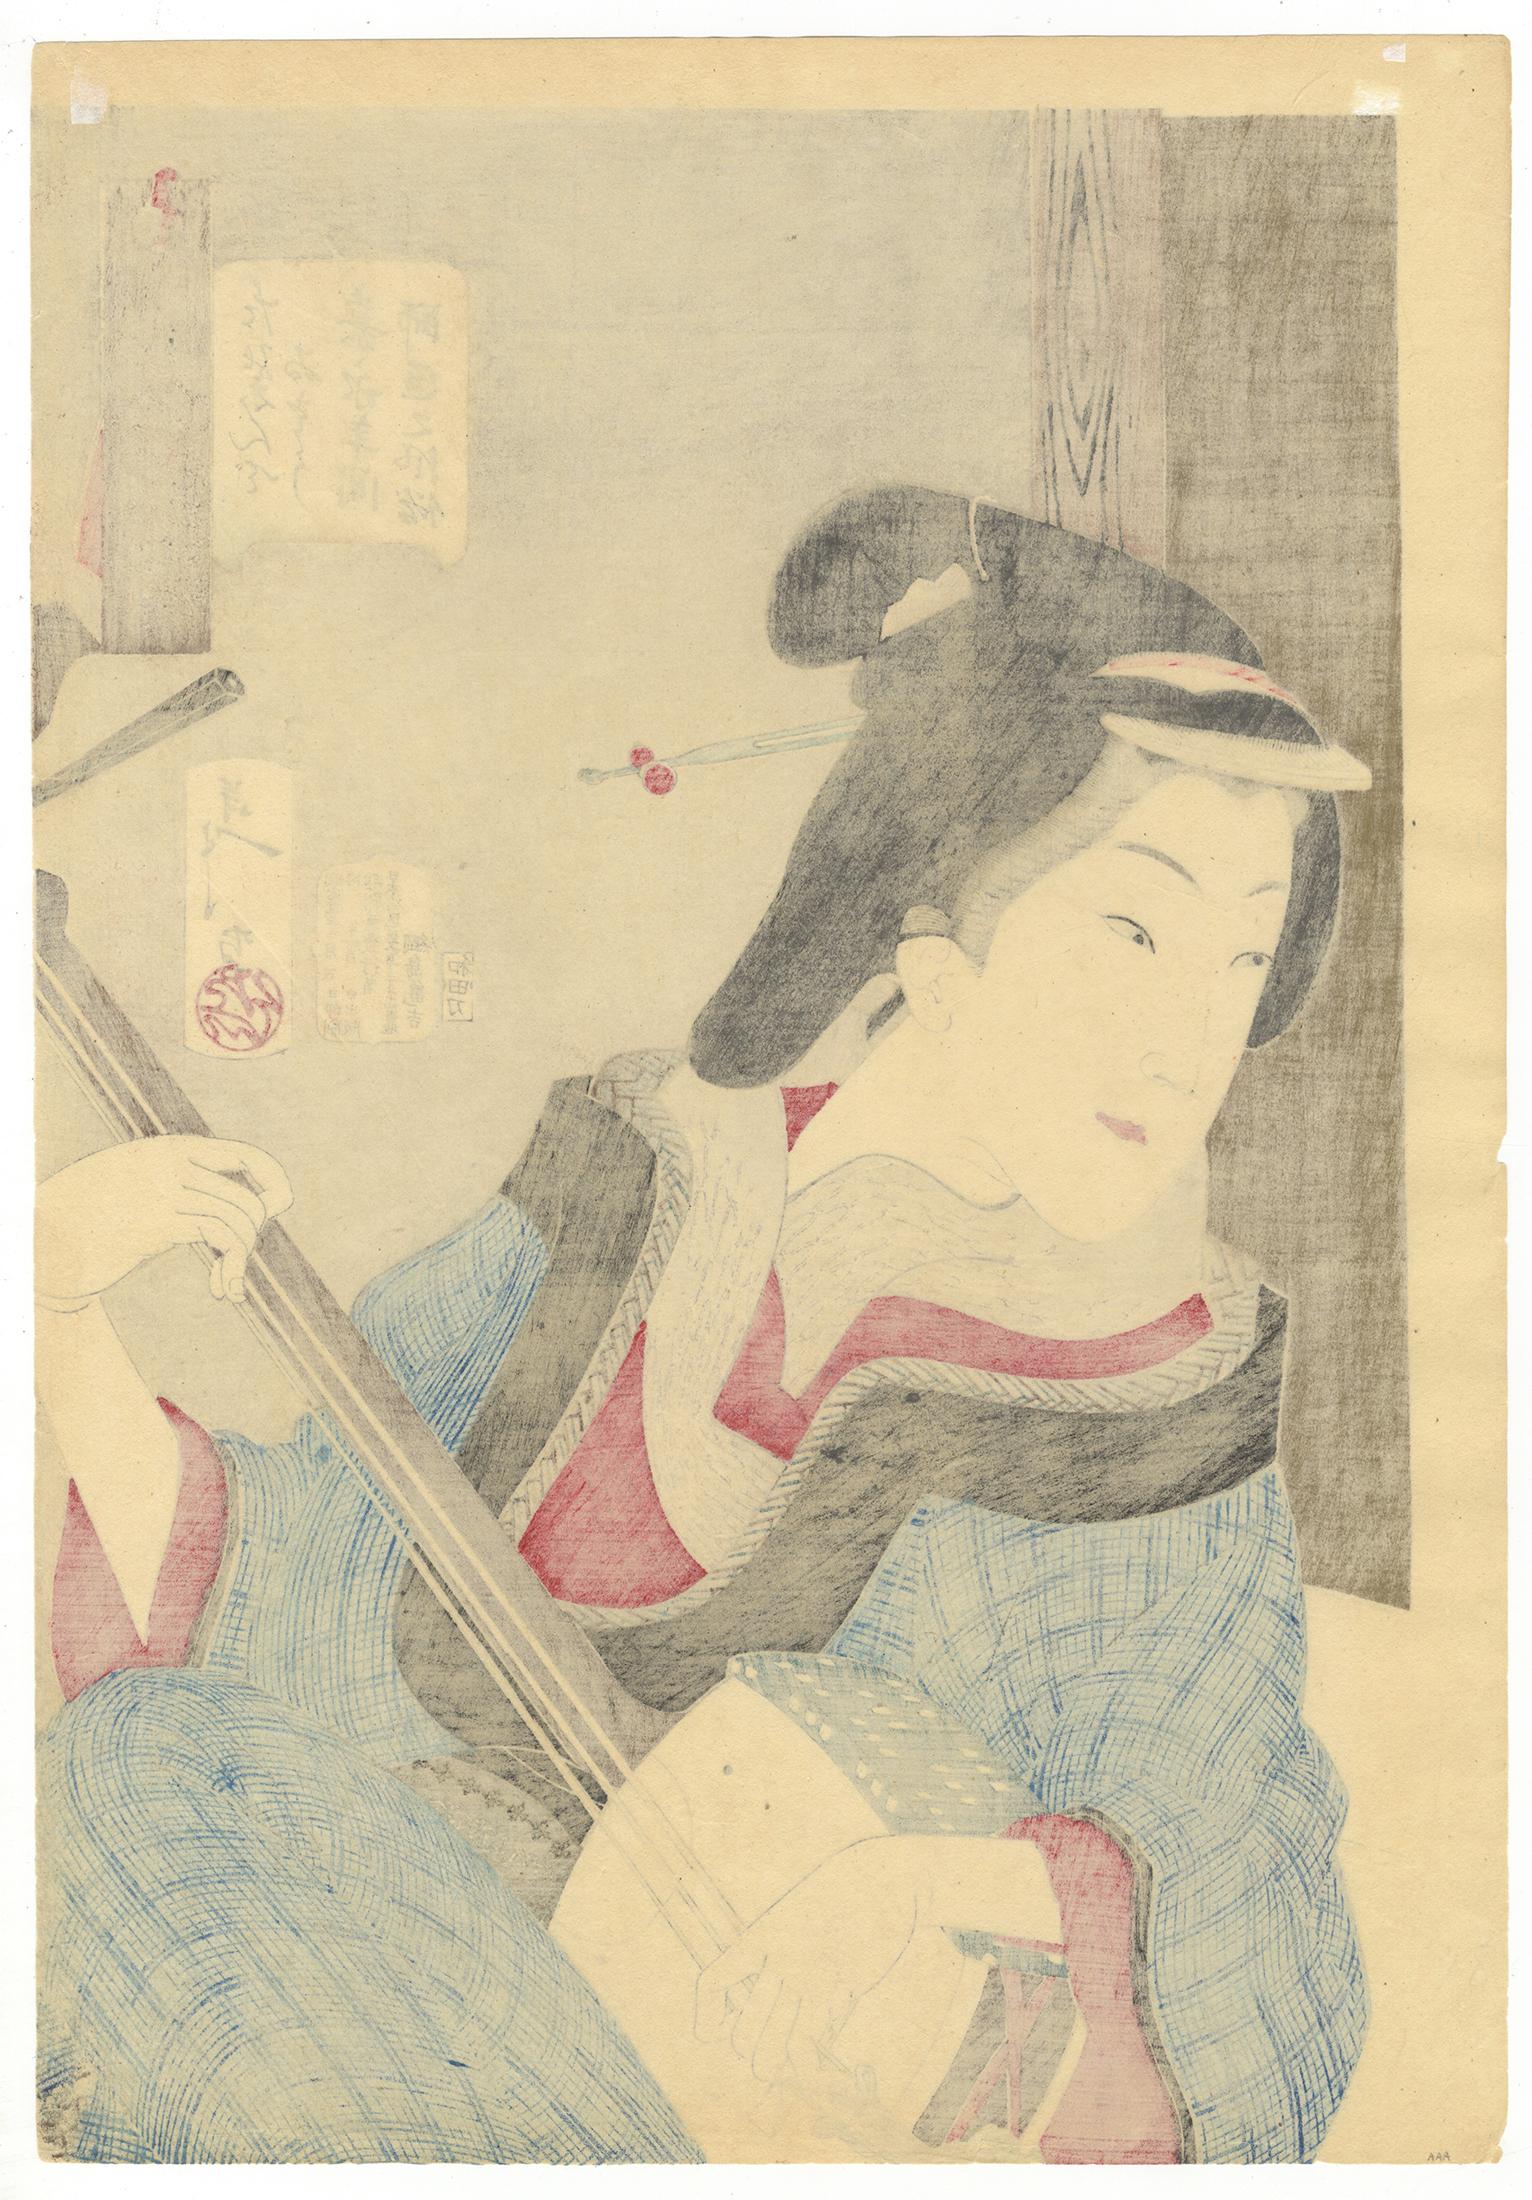 Yoshitoshi, Ukiyo-e, Thirty-two Manners and Customs, Beauty, Shamisen, Enjoyment - Print by Tsukioka Yoshitoshi